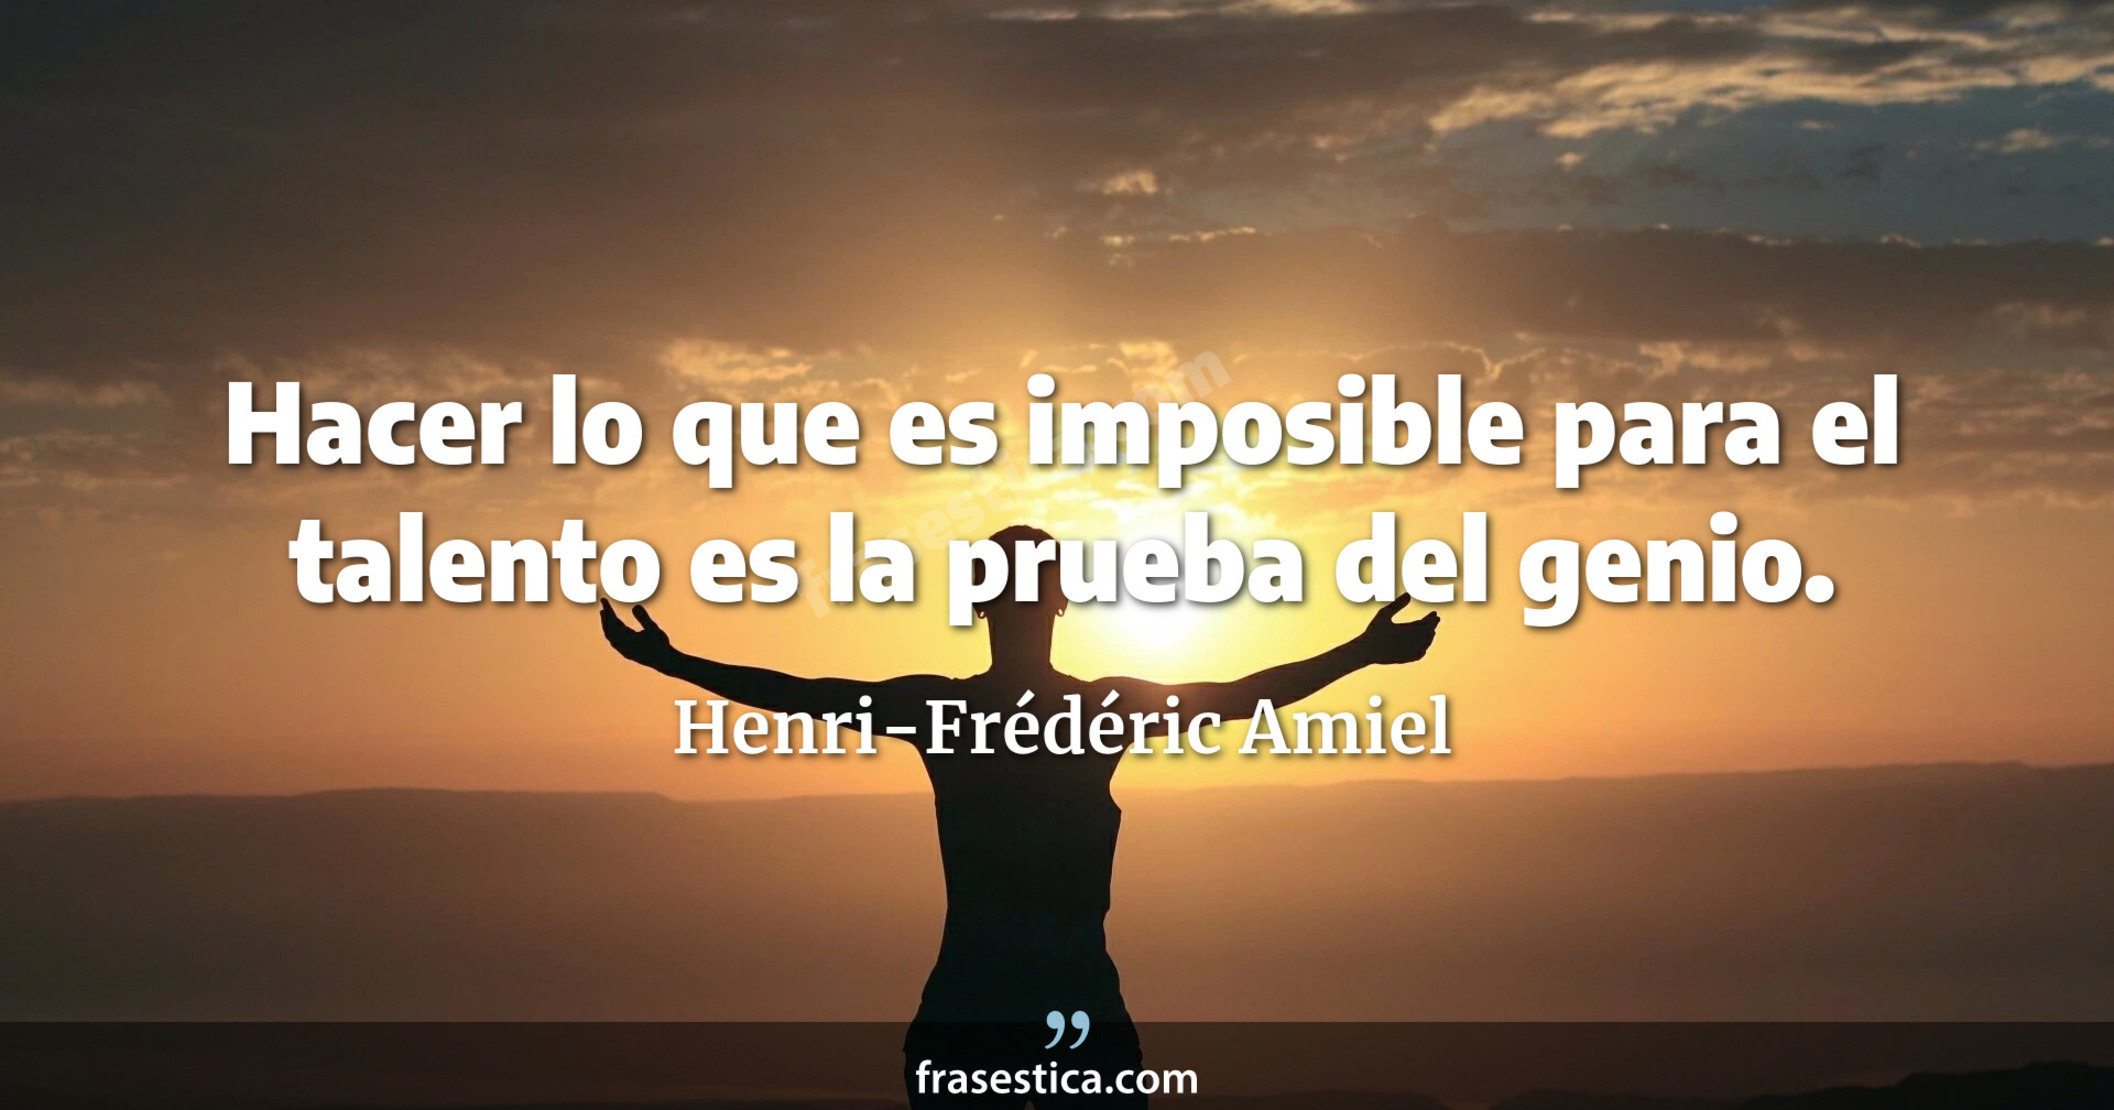 Hacer lo que es imposible para el talento es la prueba del genio. - Henri-Frédéric Amiel